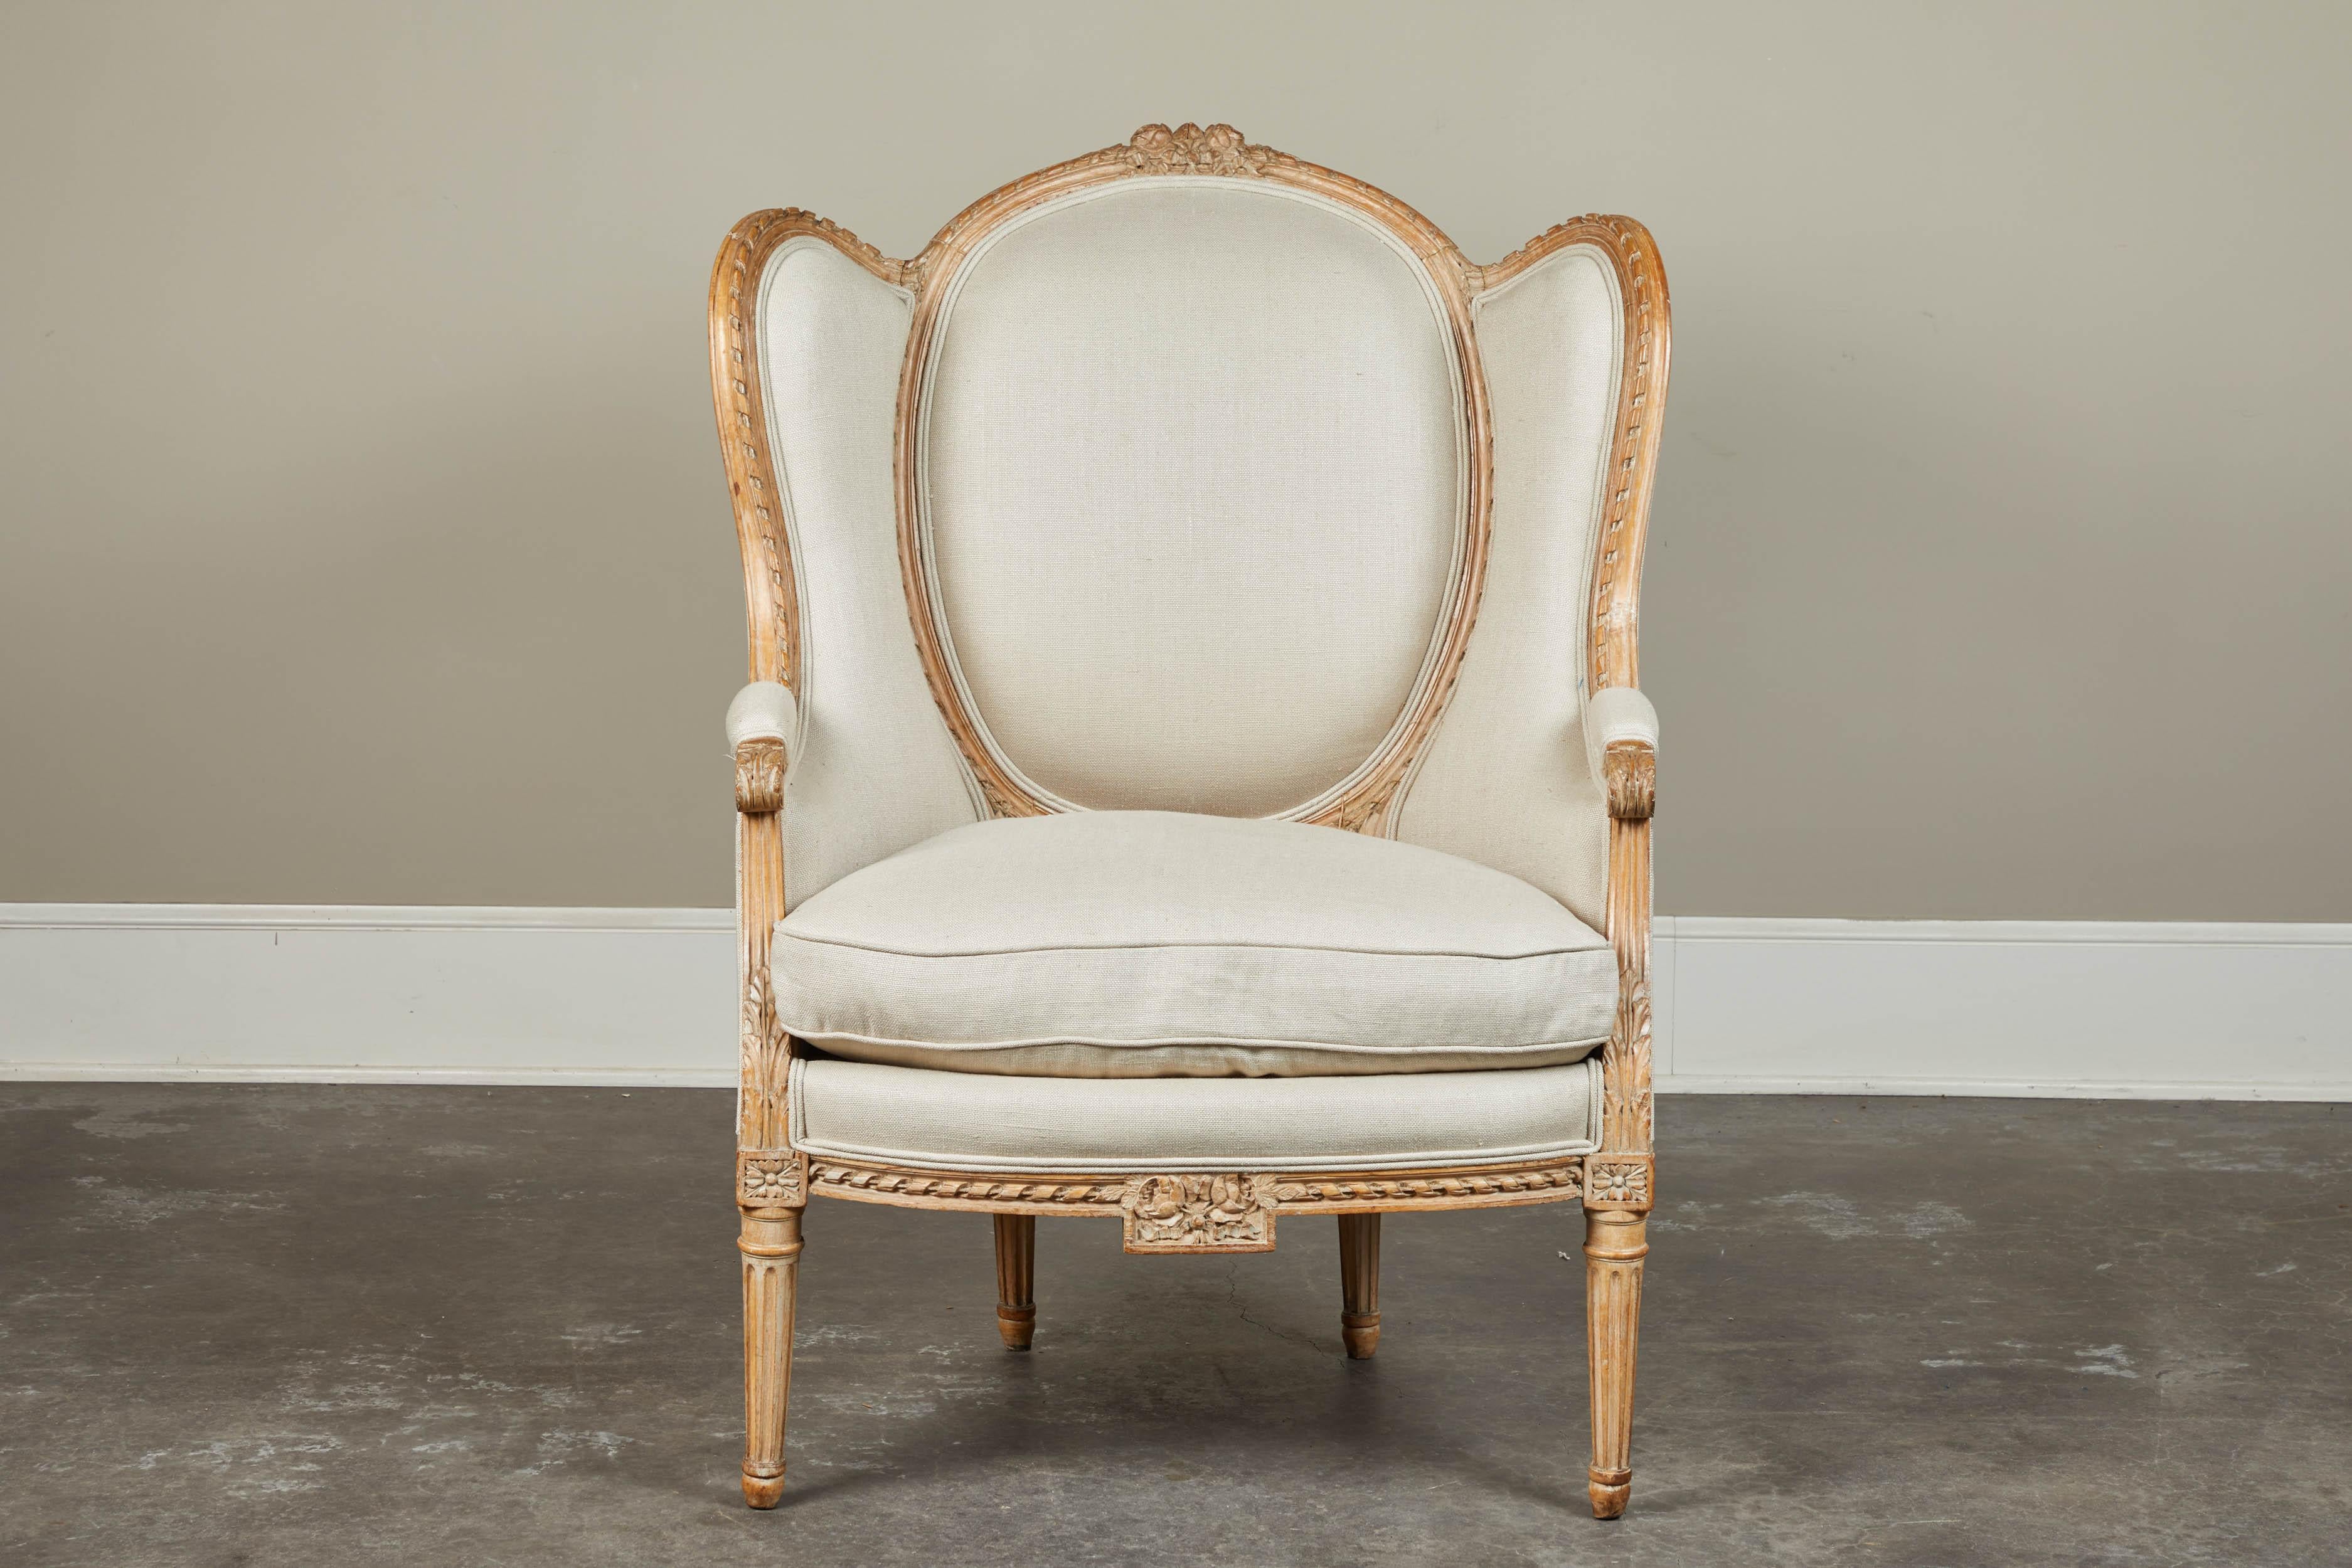 Un fauteuil à oreilles français très joliment sculpté, avec une tapisserie en lin massif. Coussin de siège amovible et garniture en bois clair, vers le XIXe siècle.